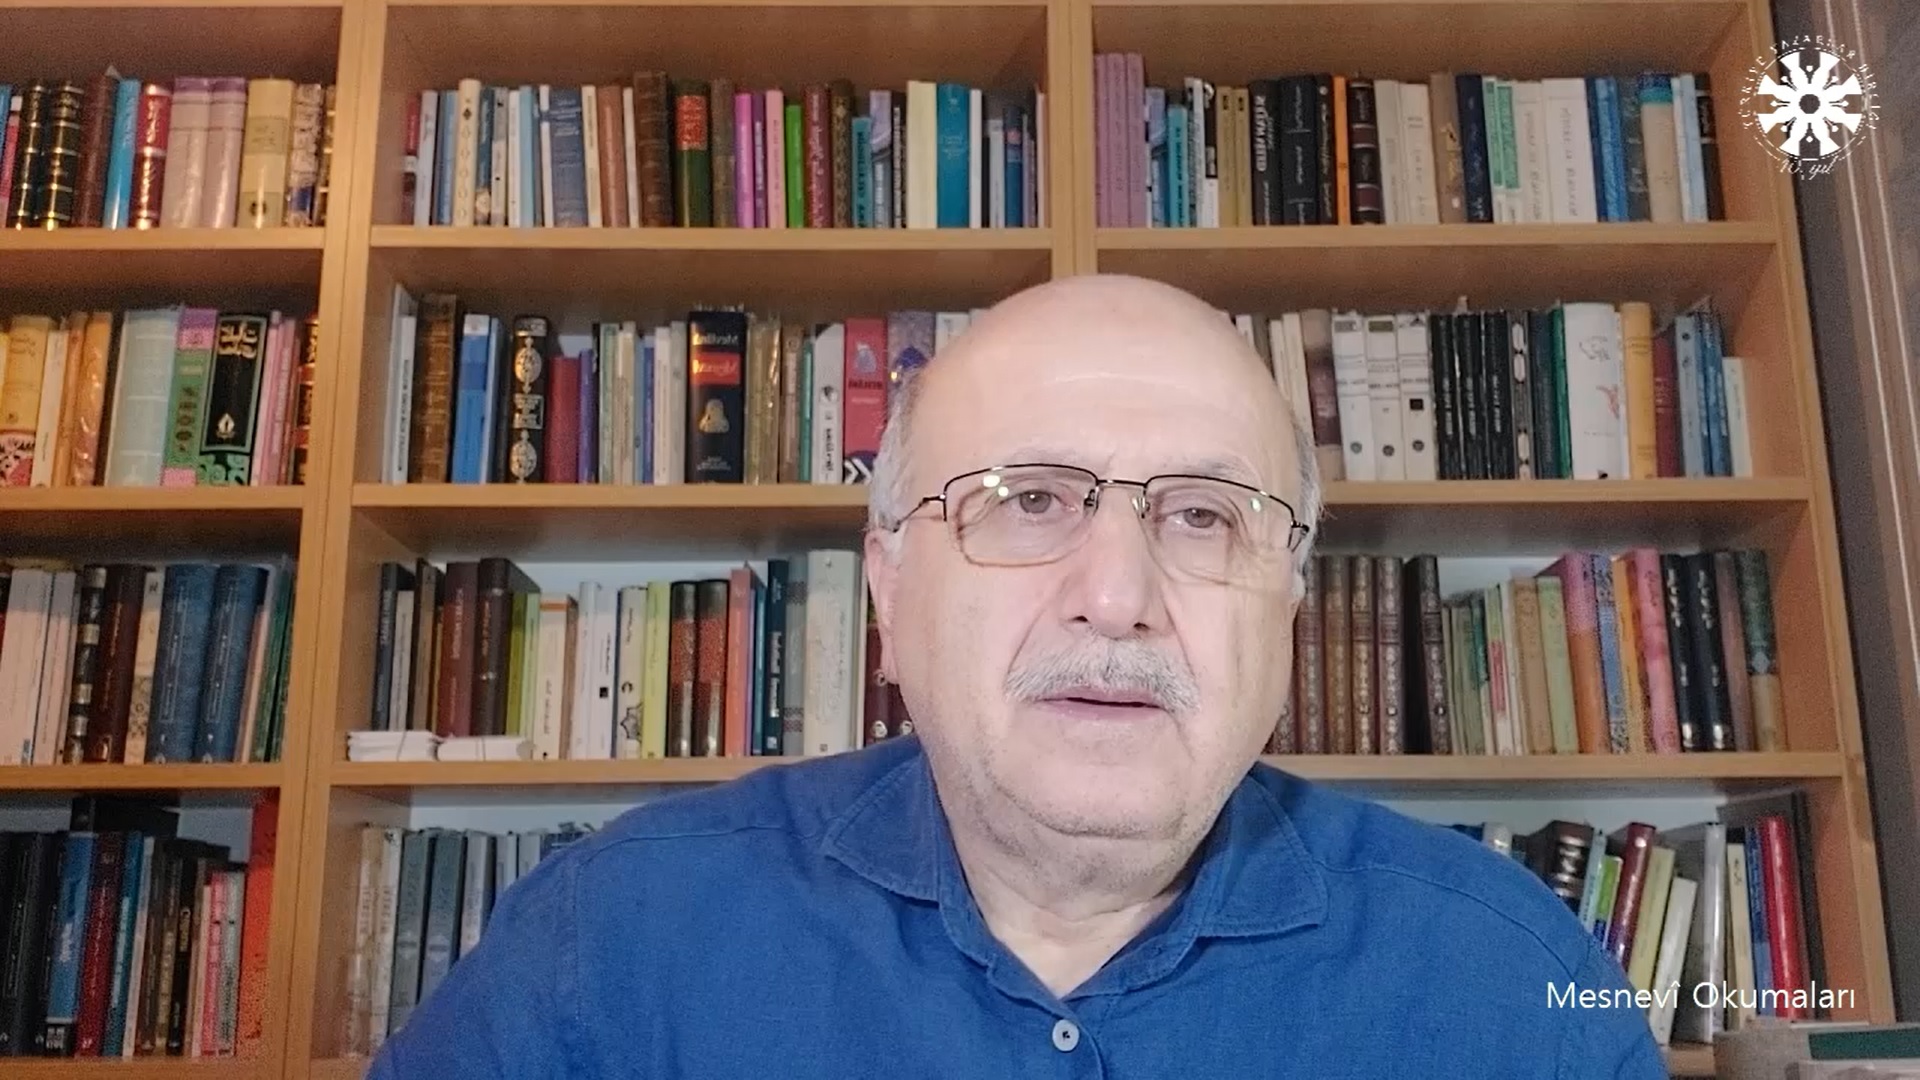 Mesnevî Okumaları -126- Prof. Dr. Adnan Karaismailoğlu